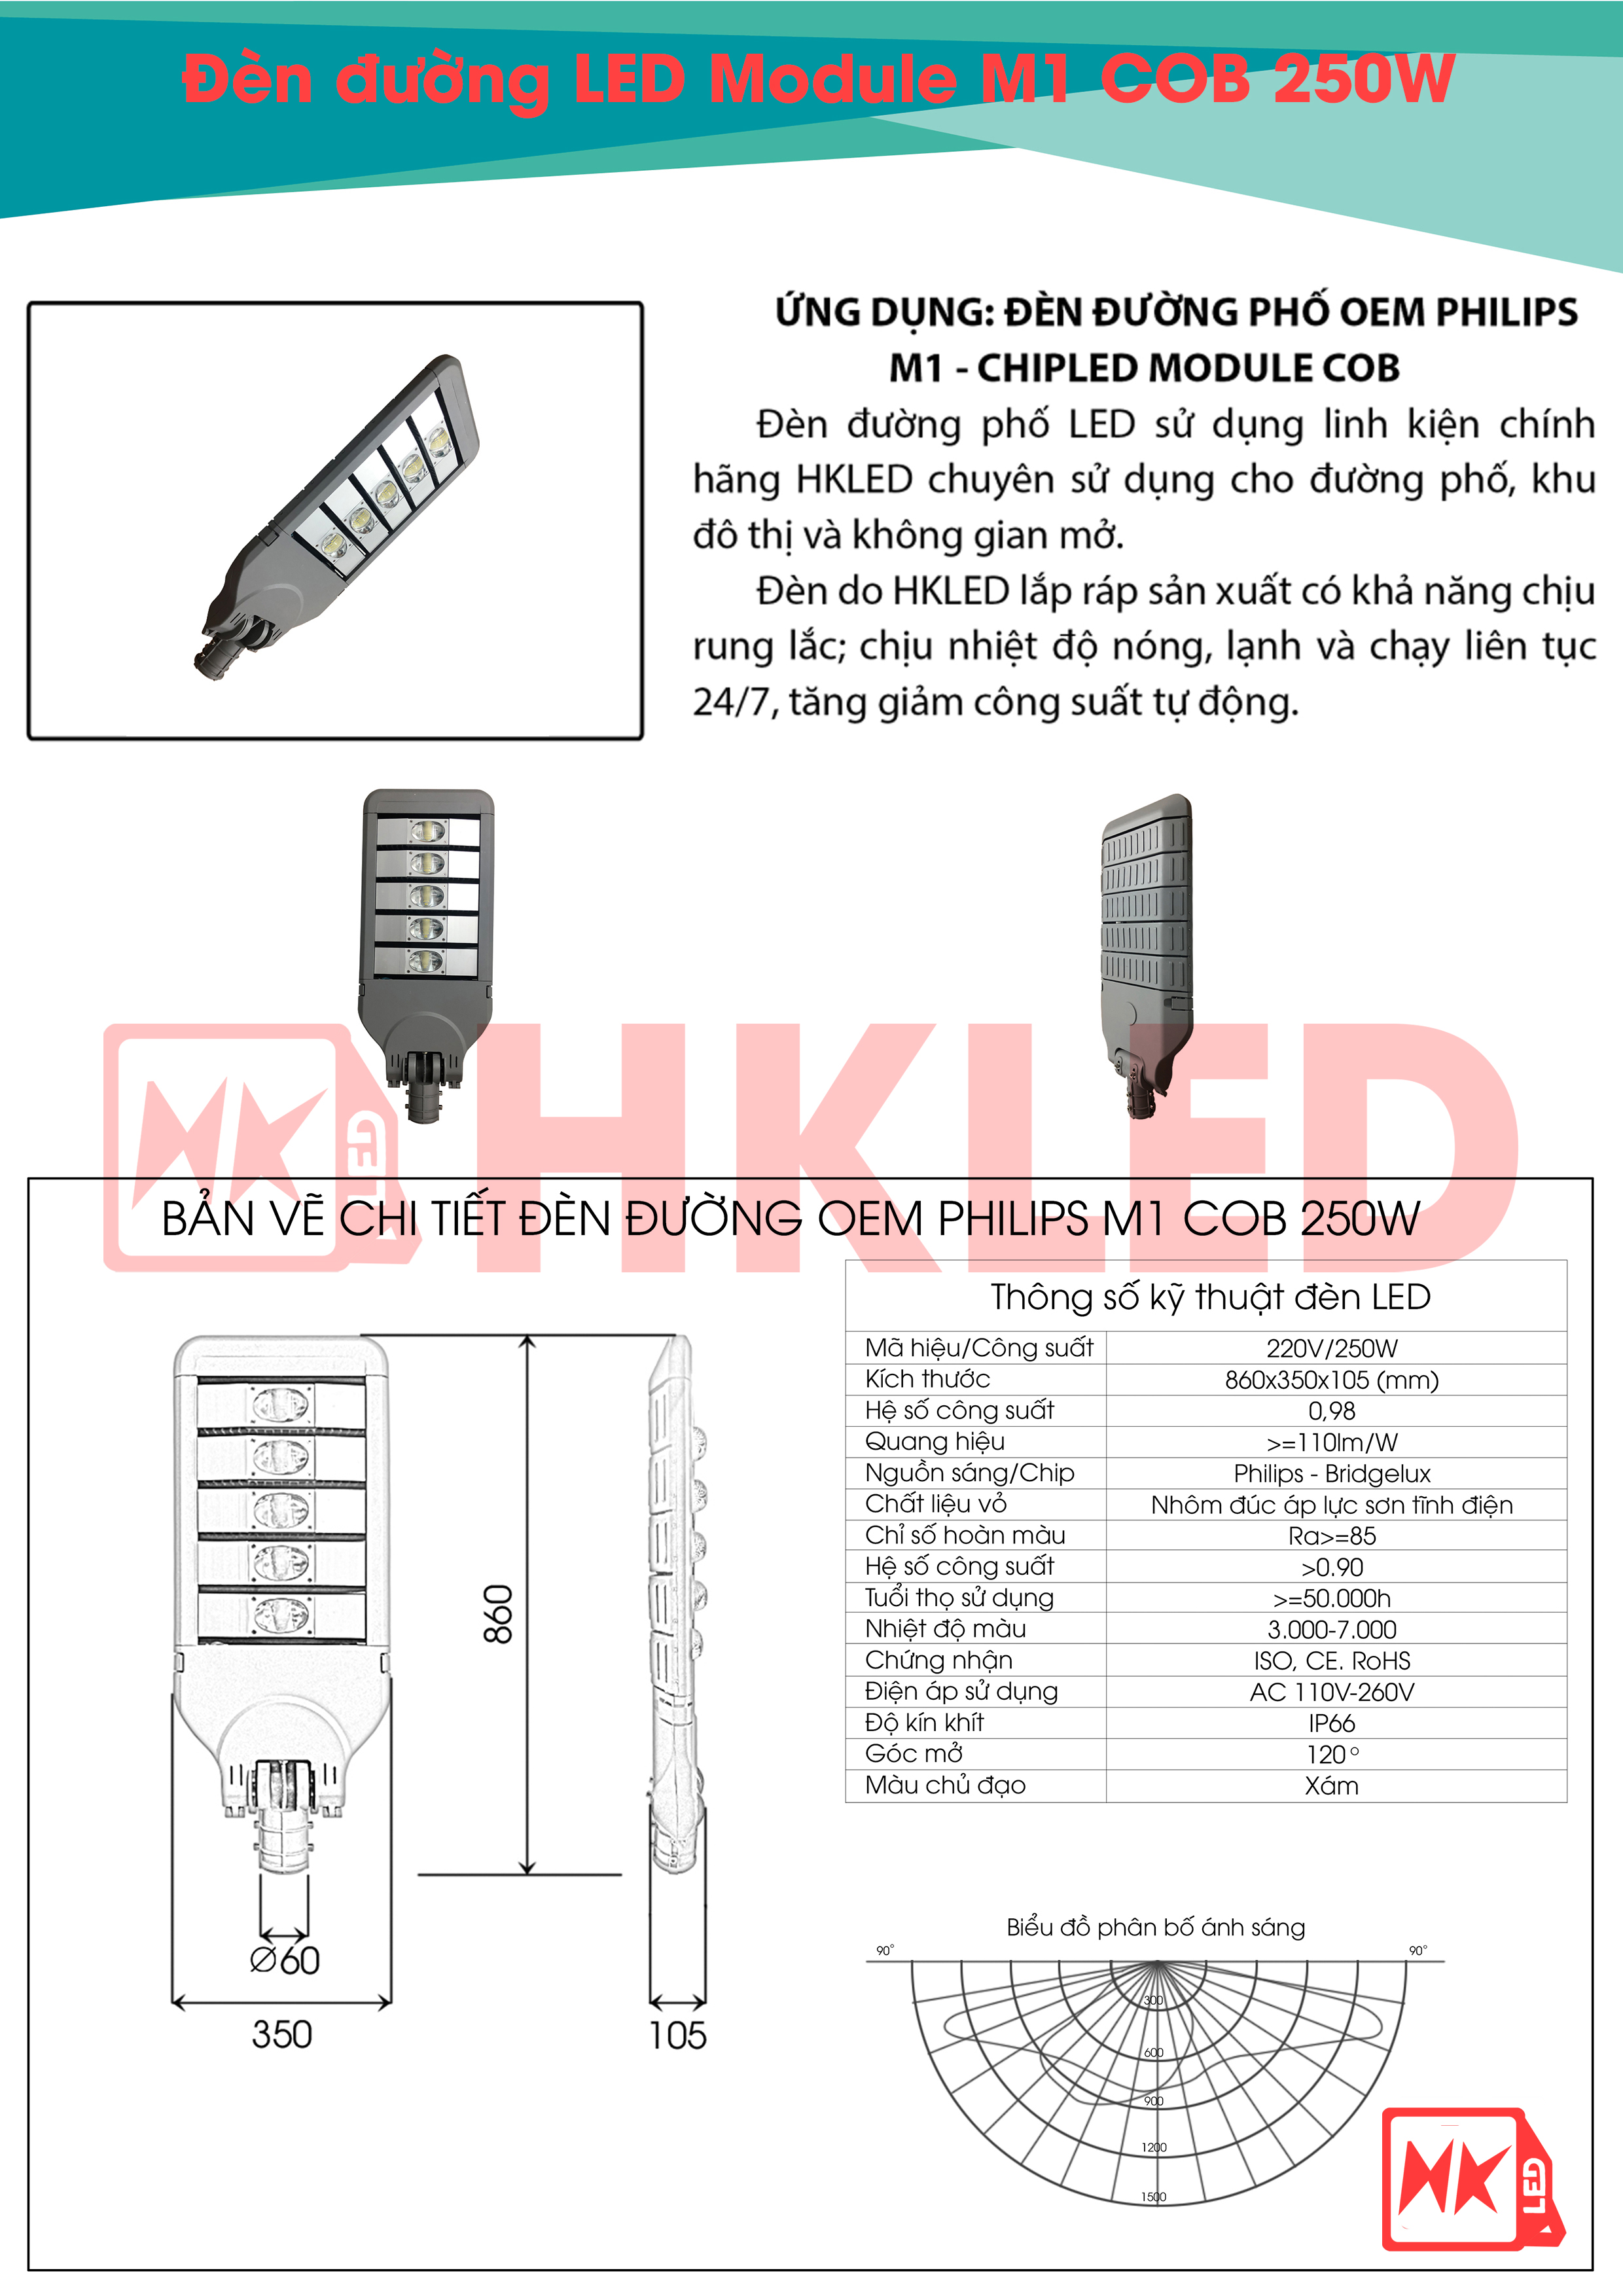 Ứng dụng, bản vẽ chi tiết và thông số kỹ thuật đèn đường LED OEM Philips M1 Module COB 250W